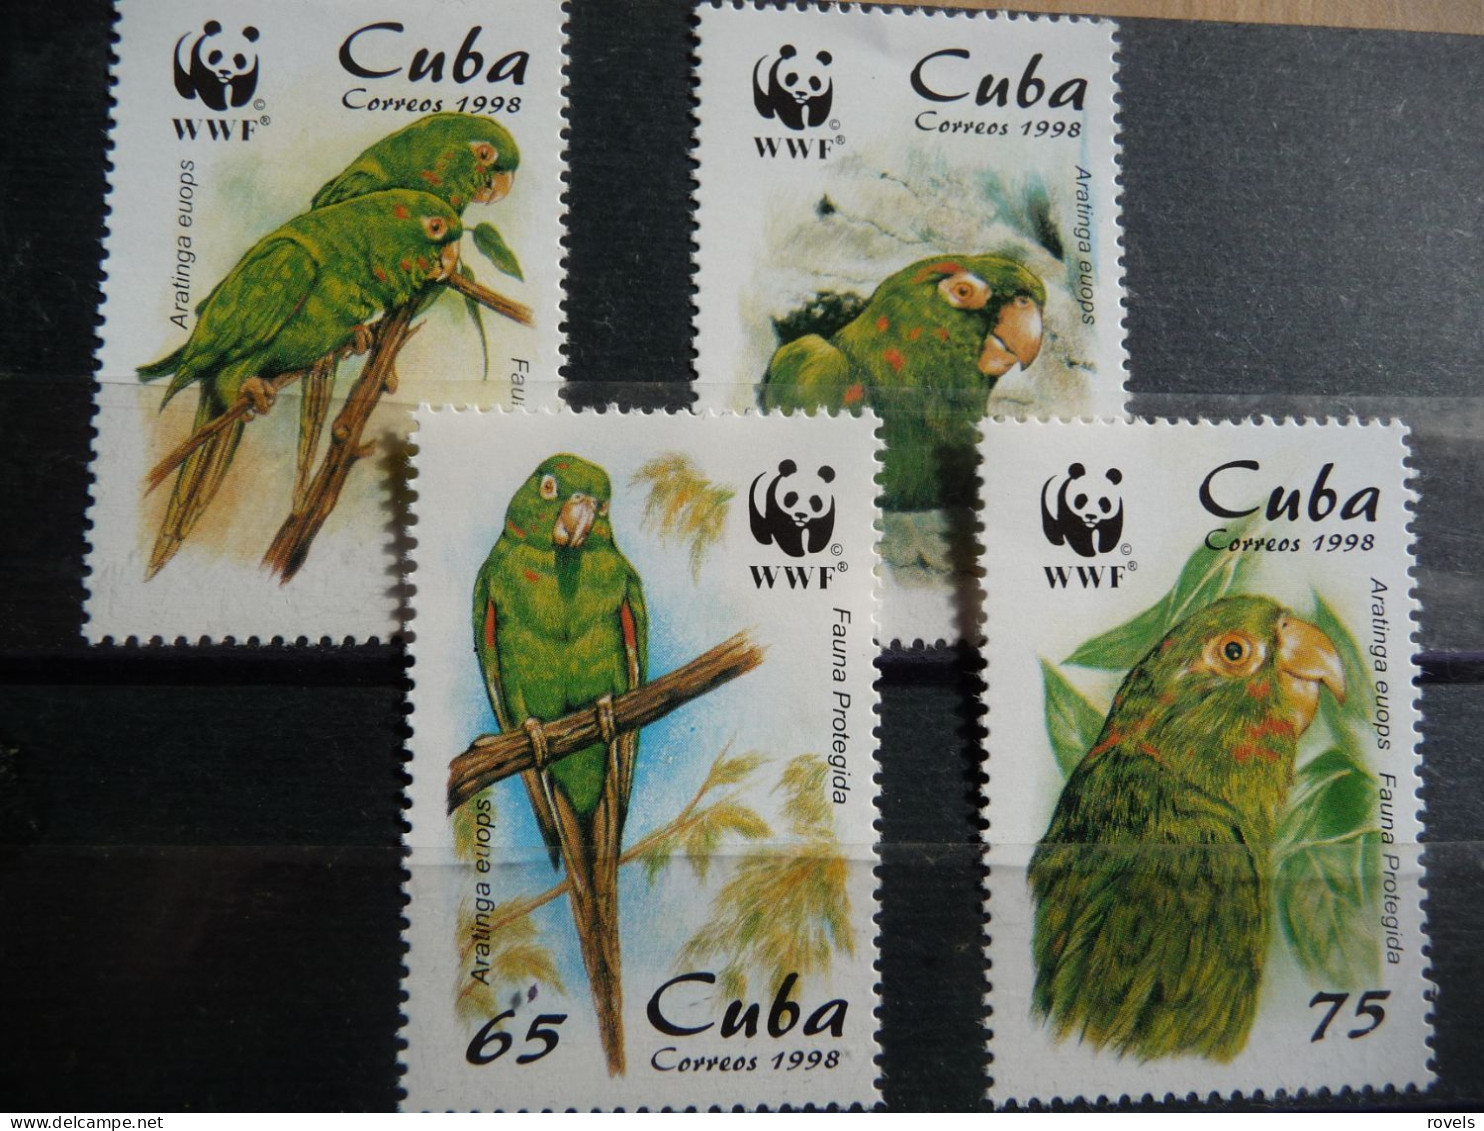 (8) Cuba ,MNH.4v. WWF 1998. Parrot Arantinga - Ongebruikt